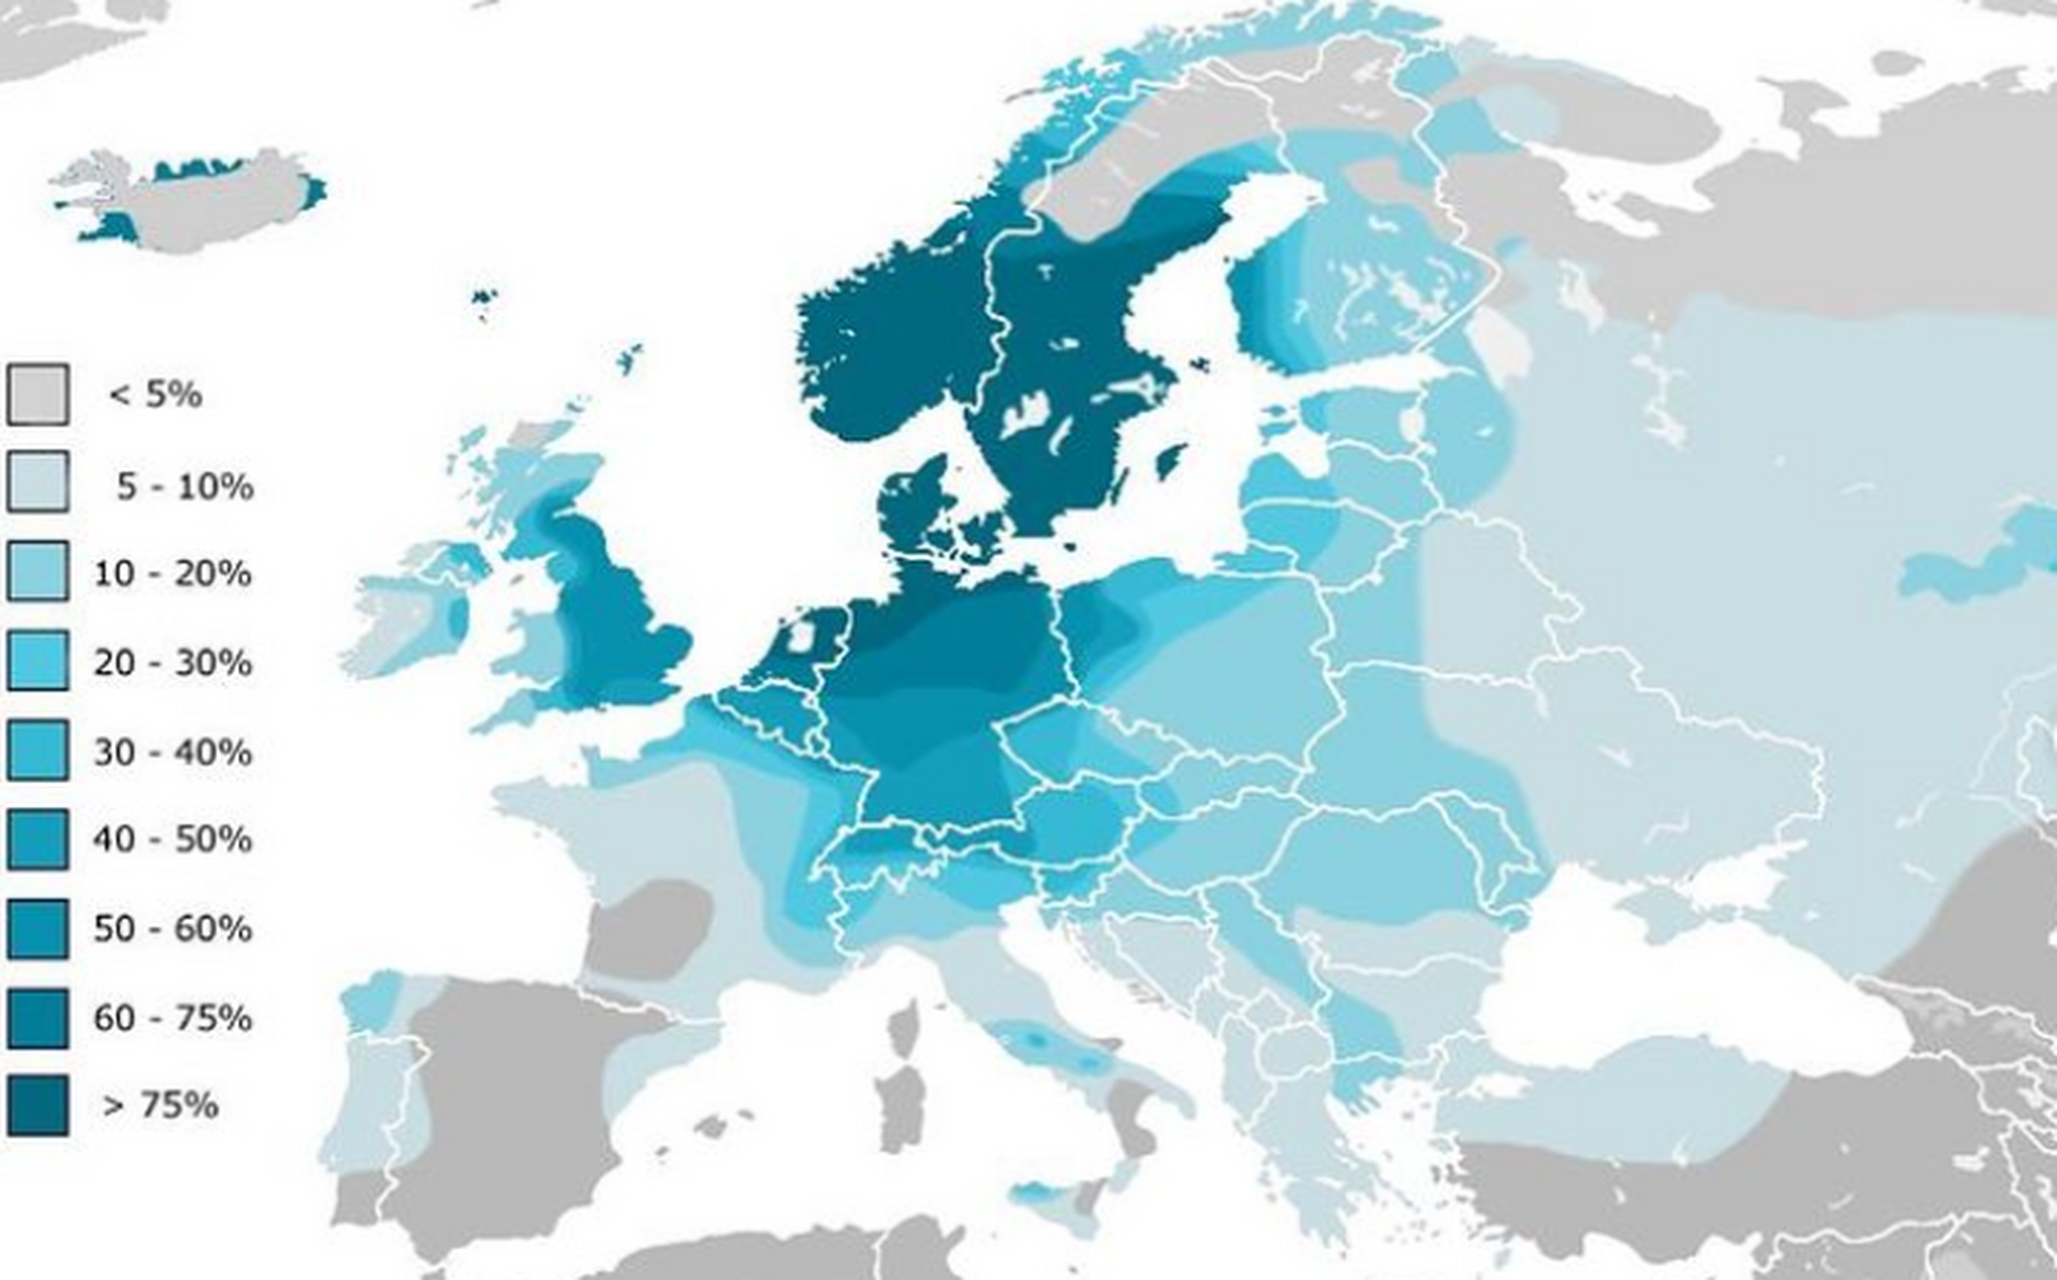 欧洲的日耳曼血统分布地区,颜色越深表示当地人的日耳曼血统越高